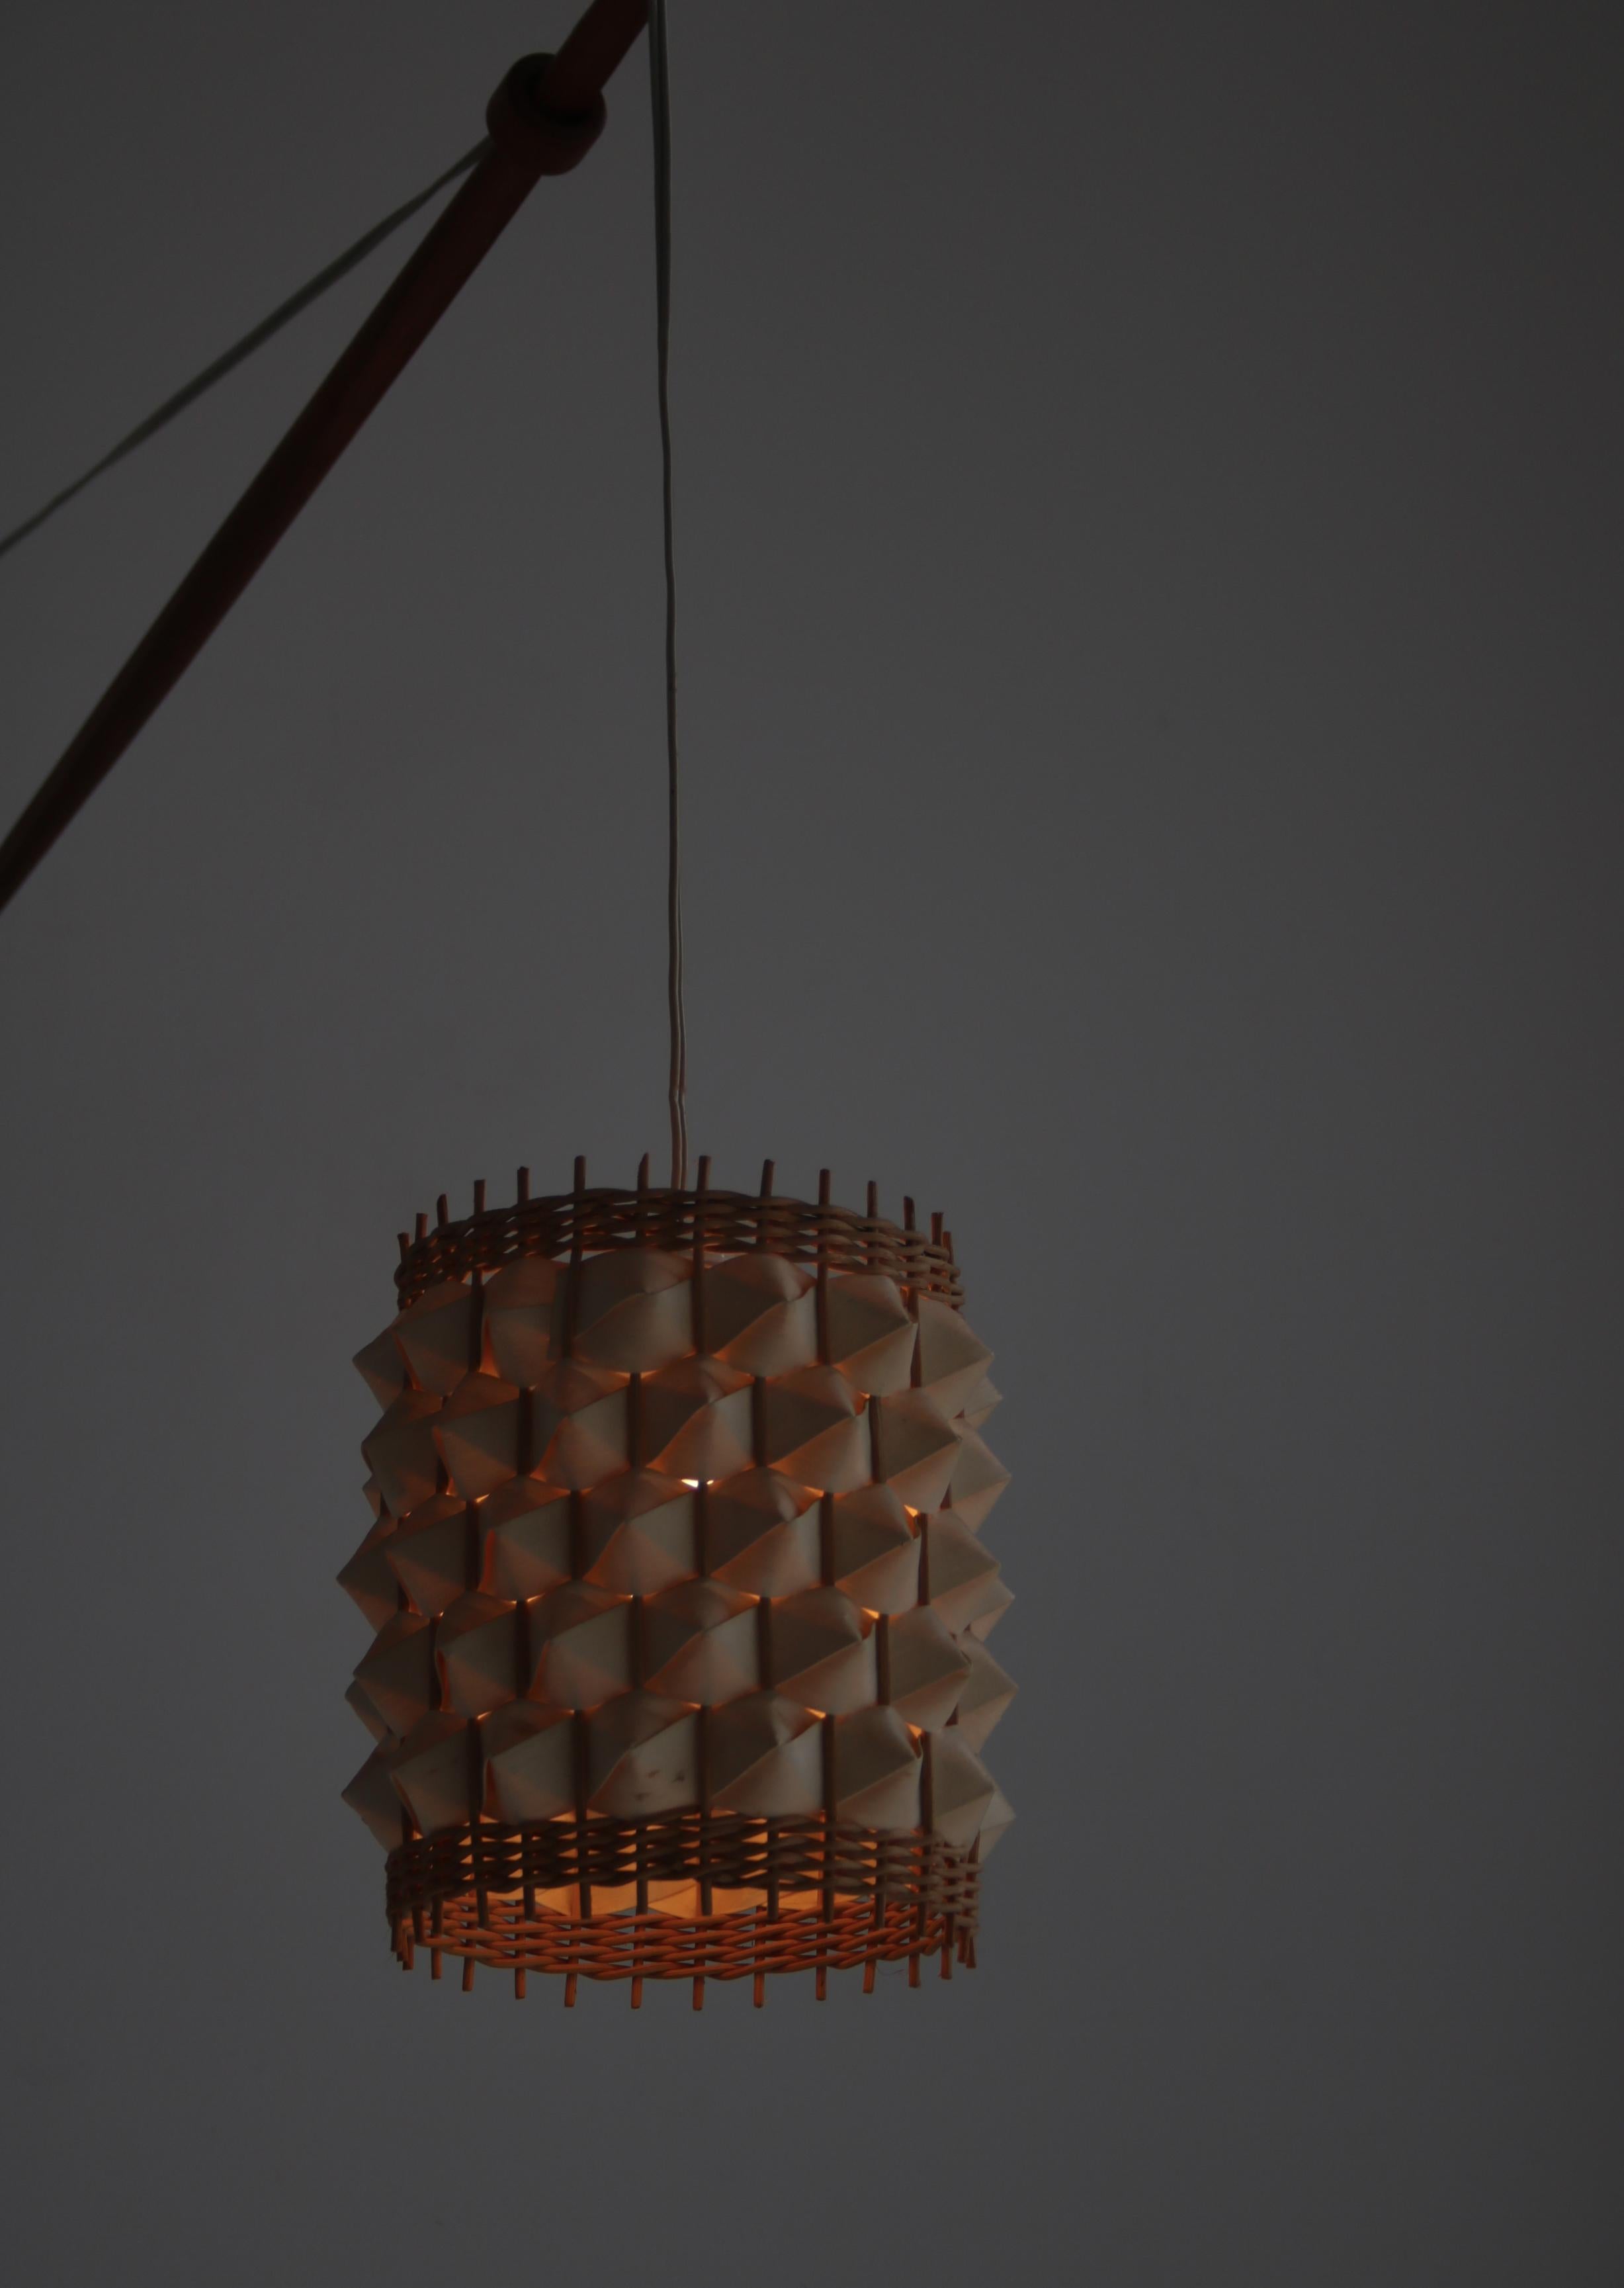 Oak Wooden Pendant Wall Lamp by Louis Poulsen, 1960s Scandinavian Modern